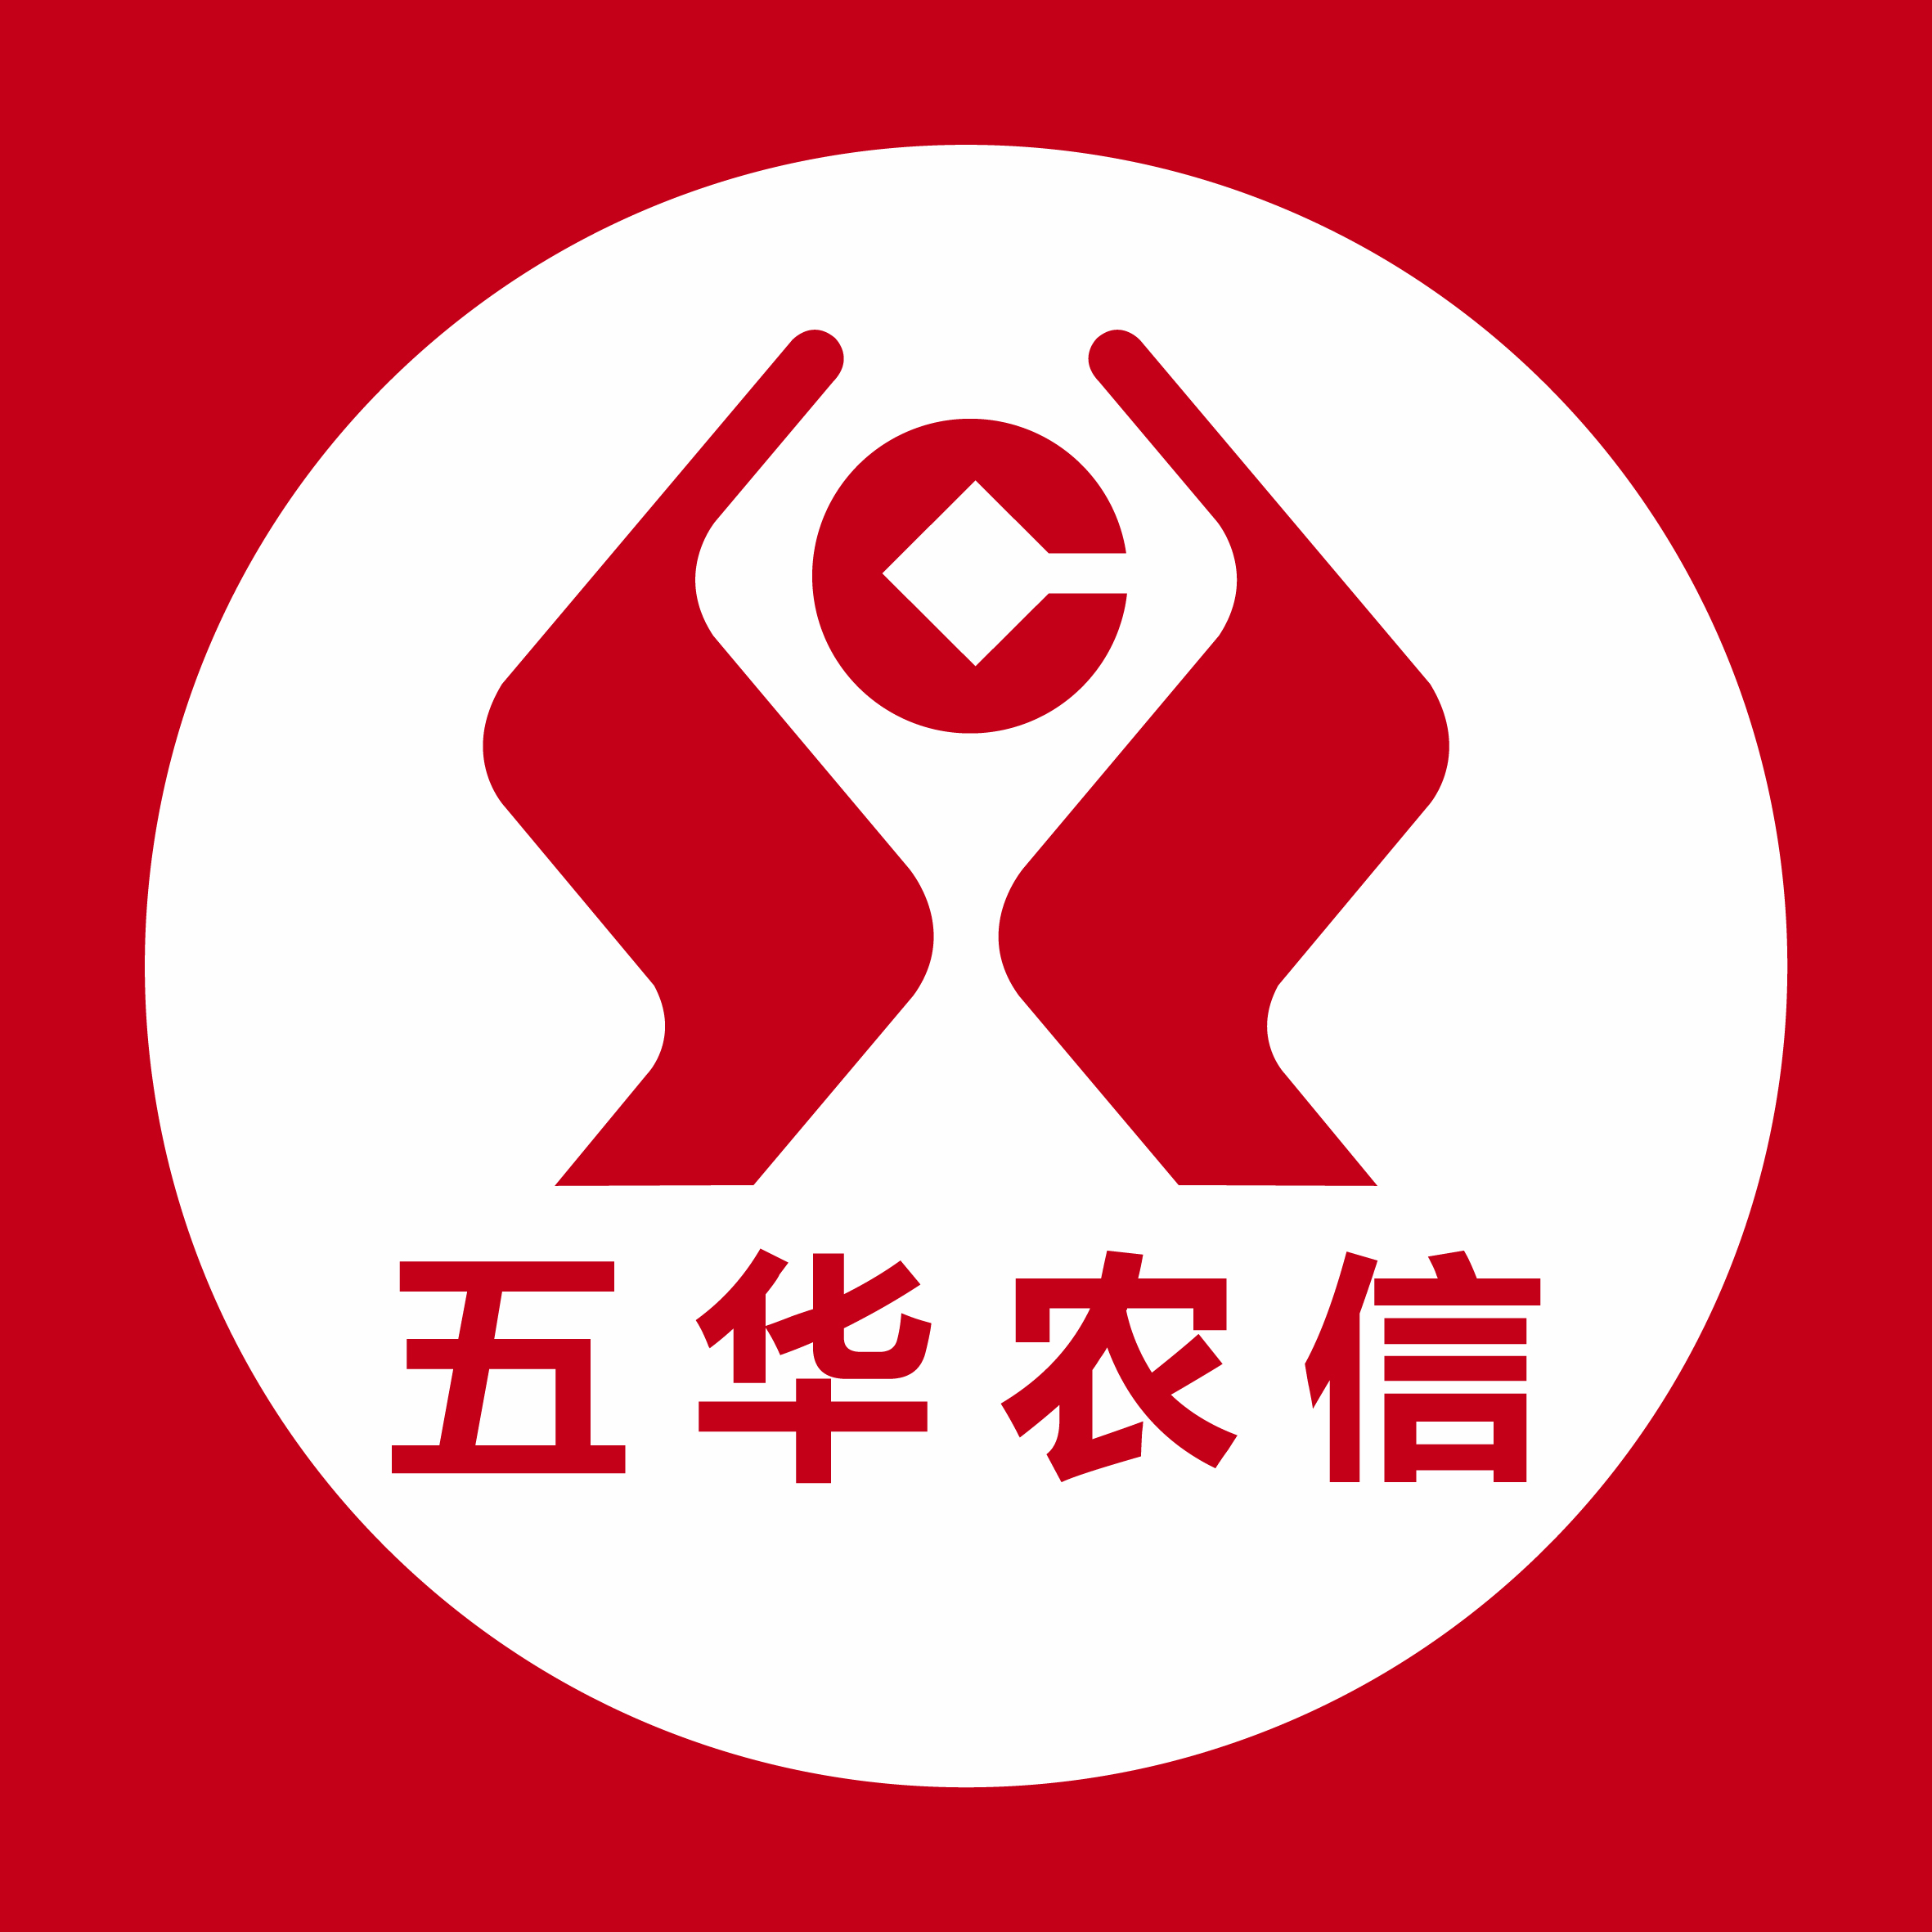 河南农信logo图片